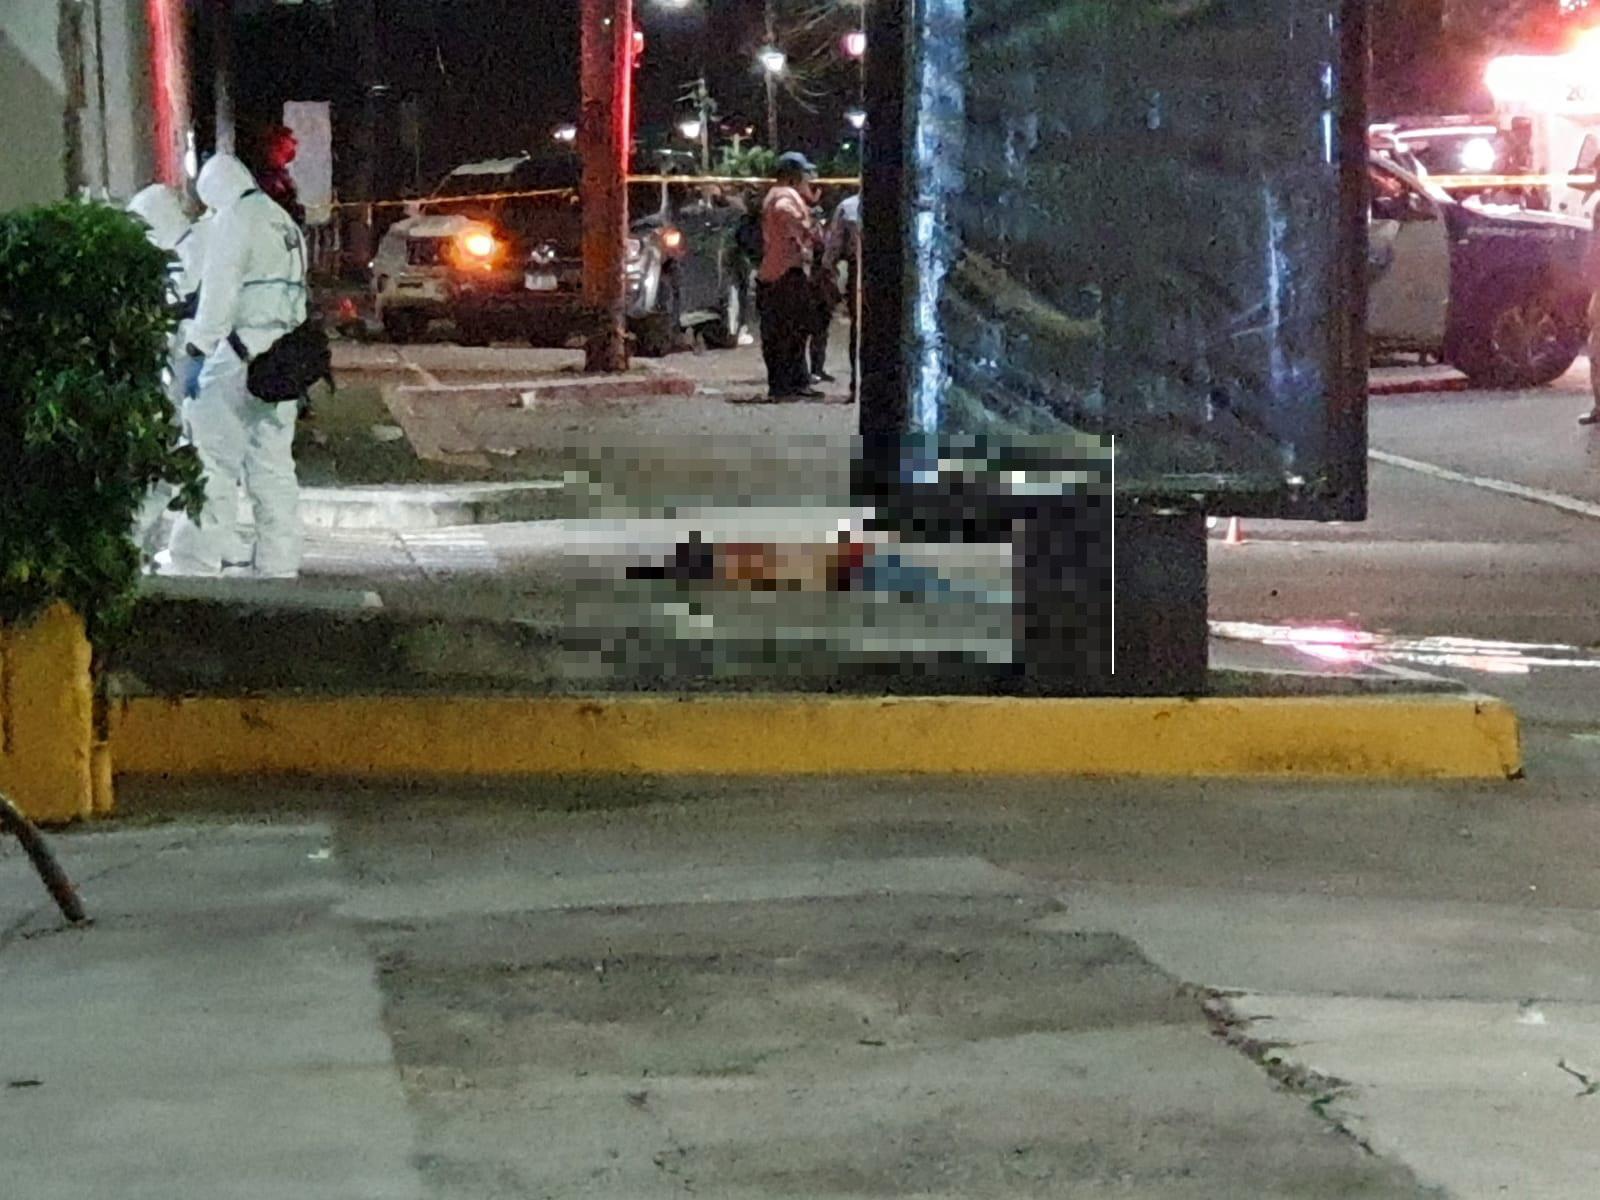 La masacre ocurrió a eso de las 2:30 de la madrugada de este jueves en Tegucigalpa.